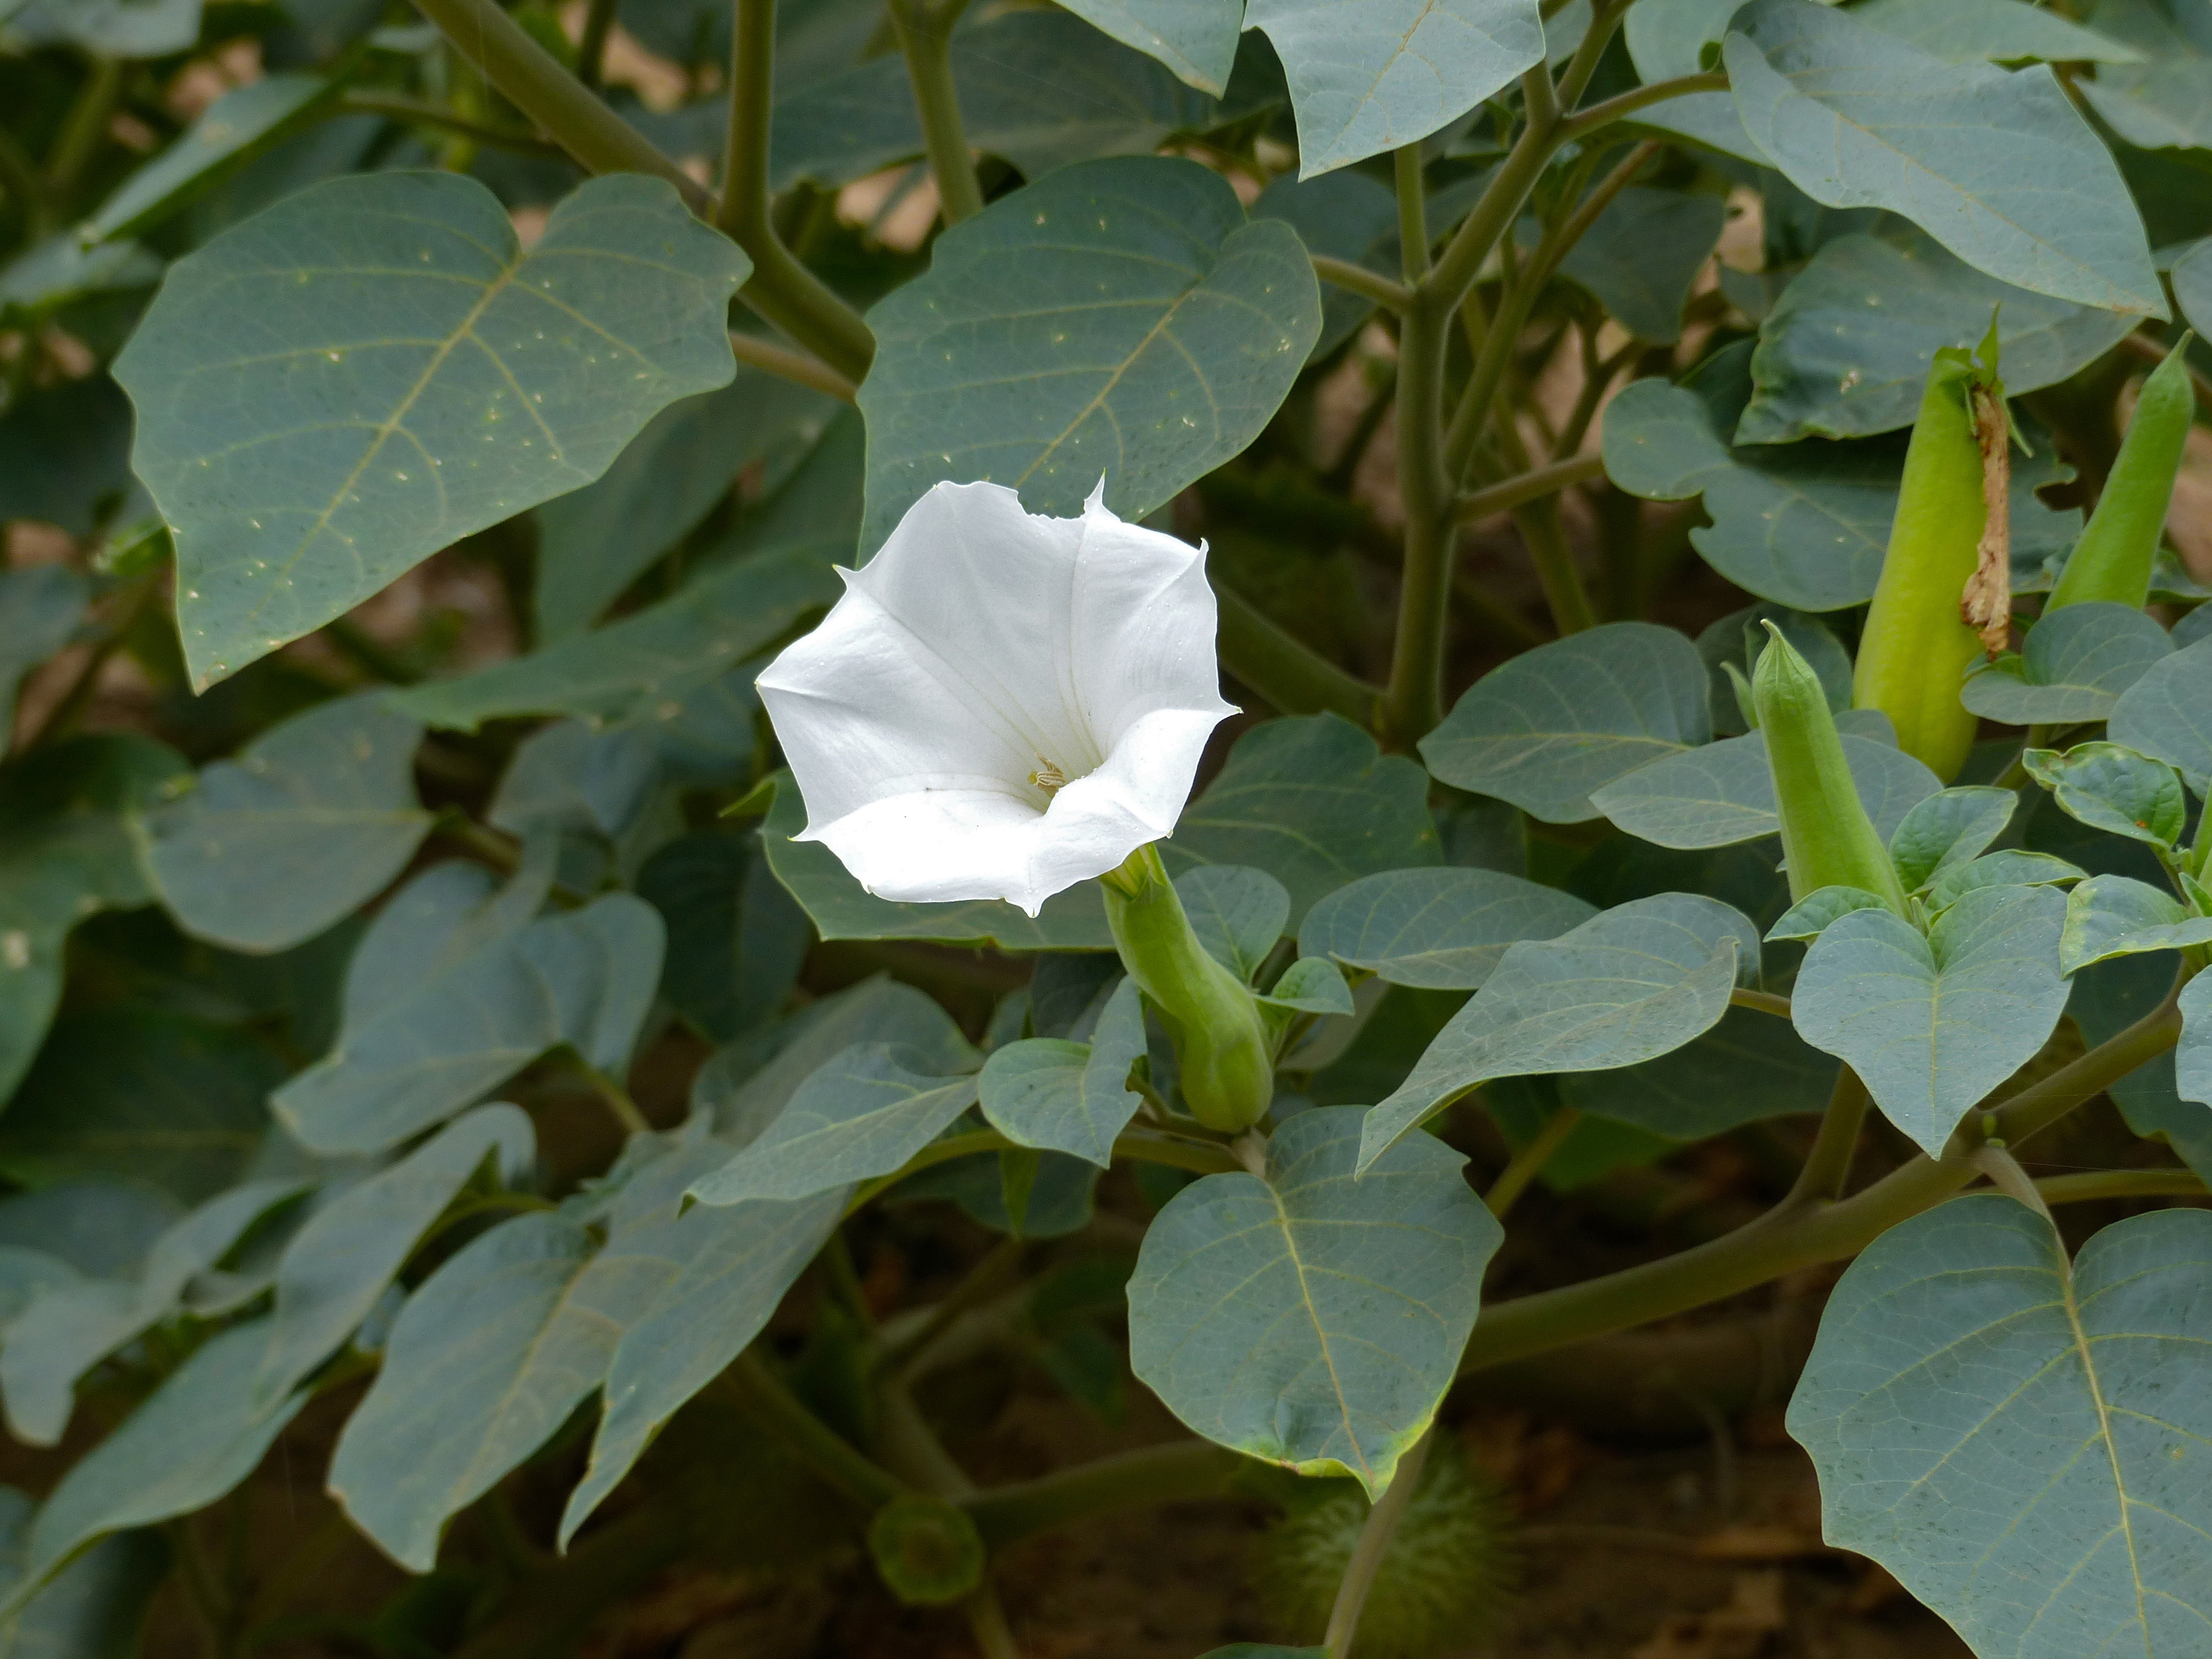 毛曼陀罗的花,注意它的长长绿色花萼筒,稍不注意可能会被认作是秋葵